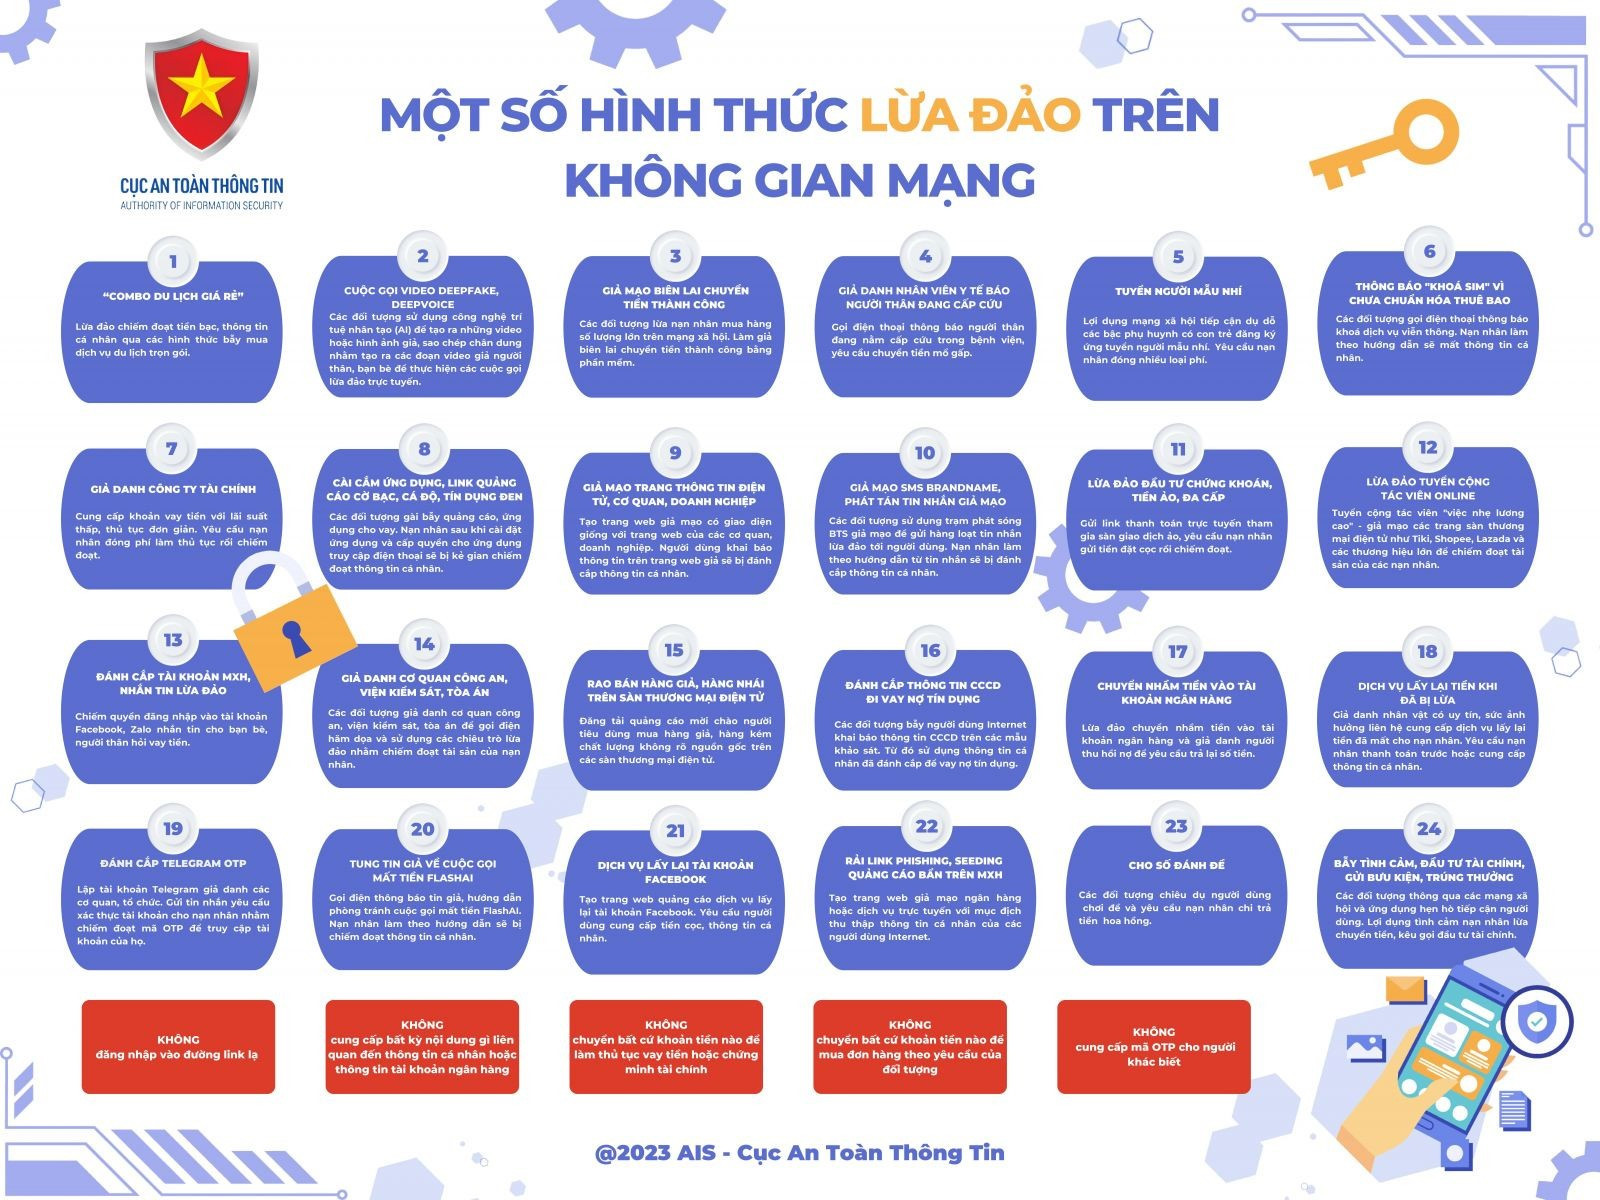 24 hình thức lừa đảo trực tuyến phổ biến trên không gian mạng Việt Nam. Nguồn: Cục An toàn thông tin.